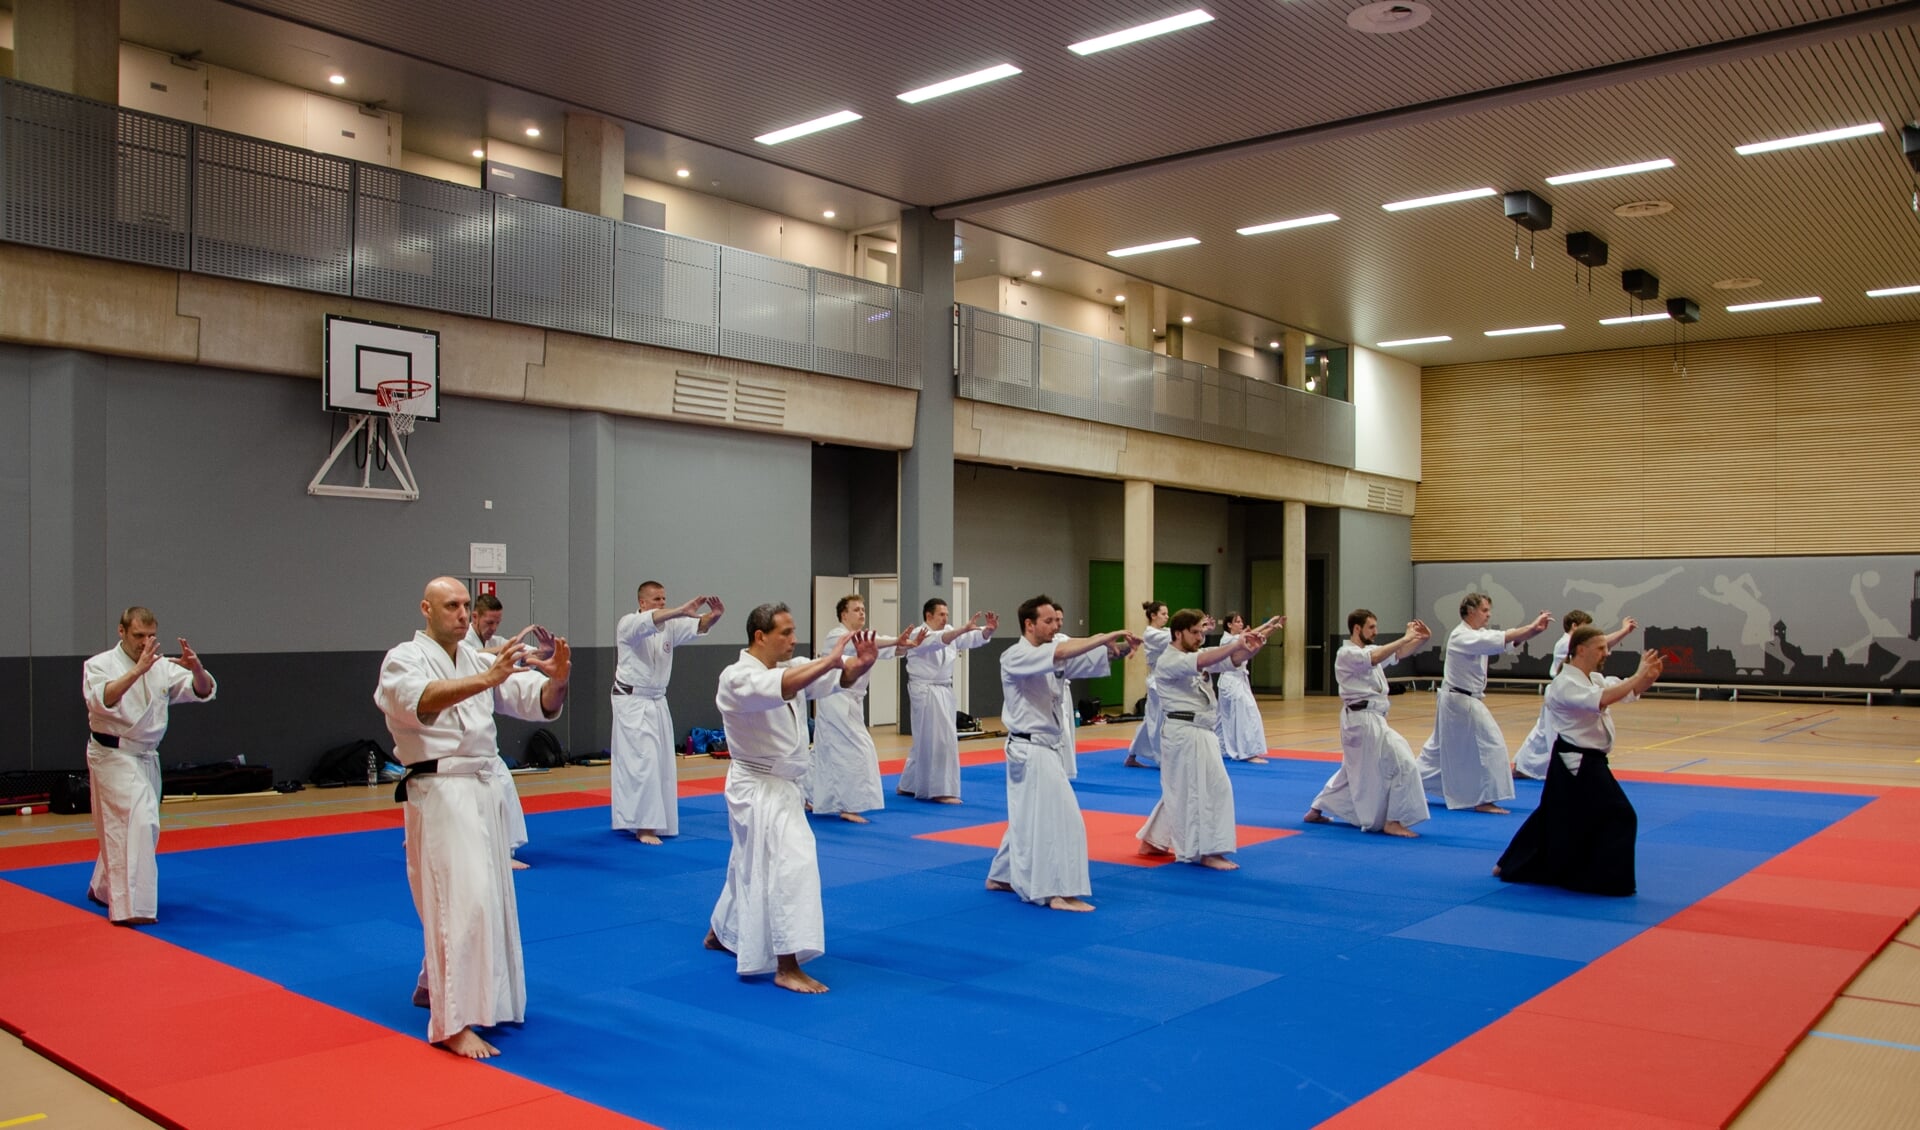 Onder begeleiding van een sensei trainen we hier de Aikiho, de coordinatie van beweging en adem